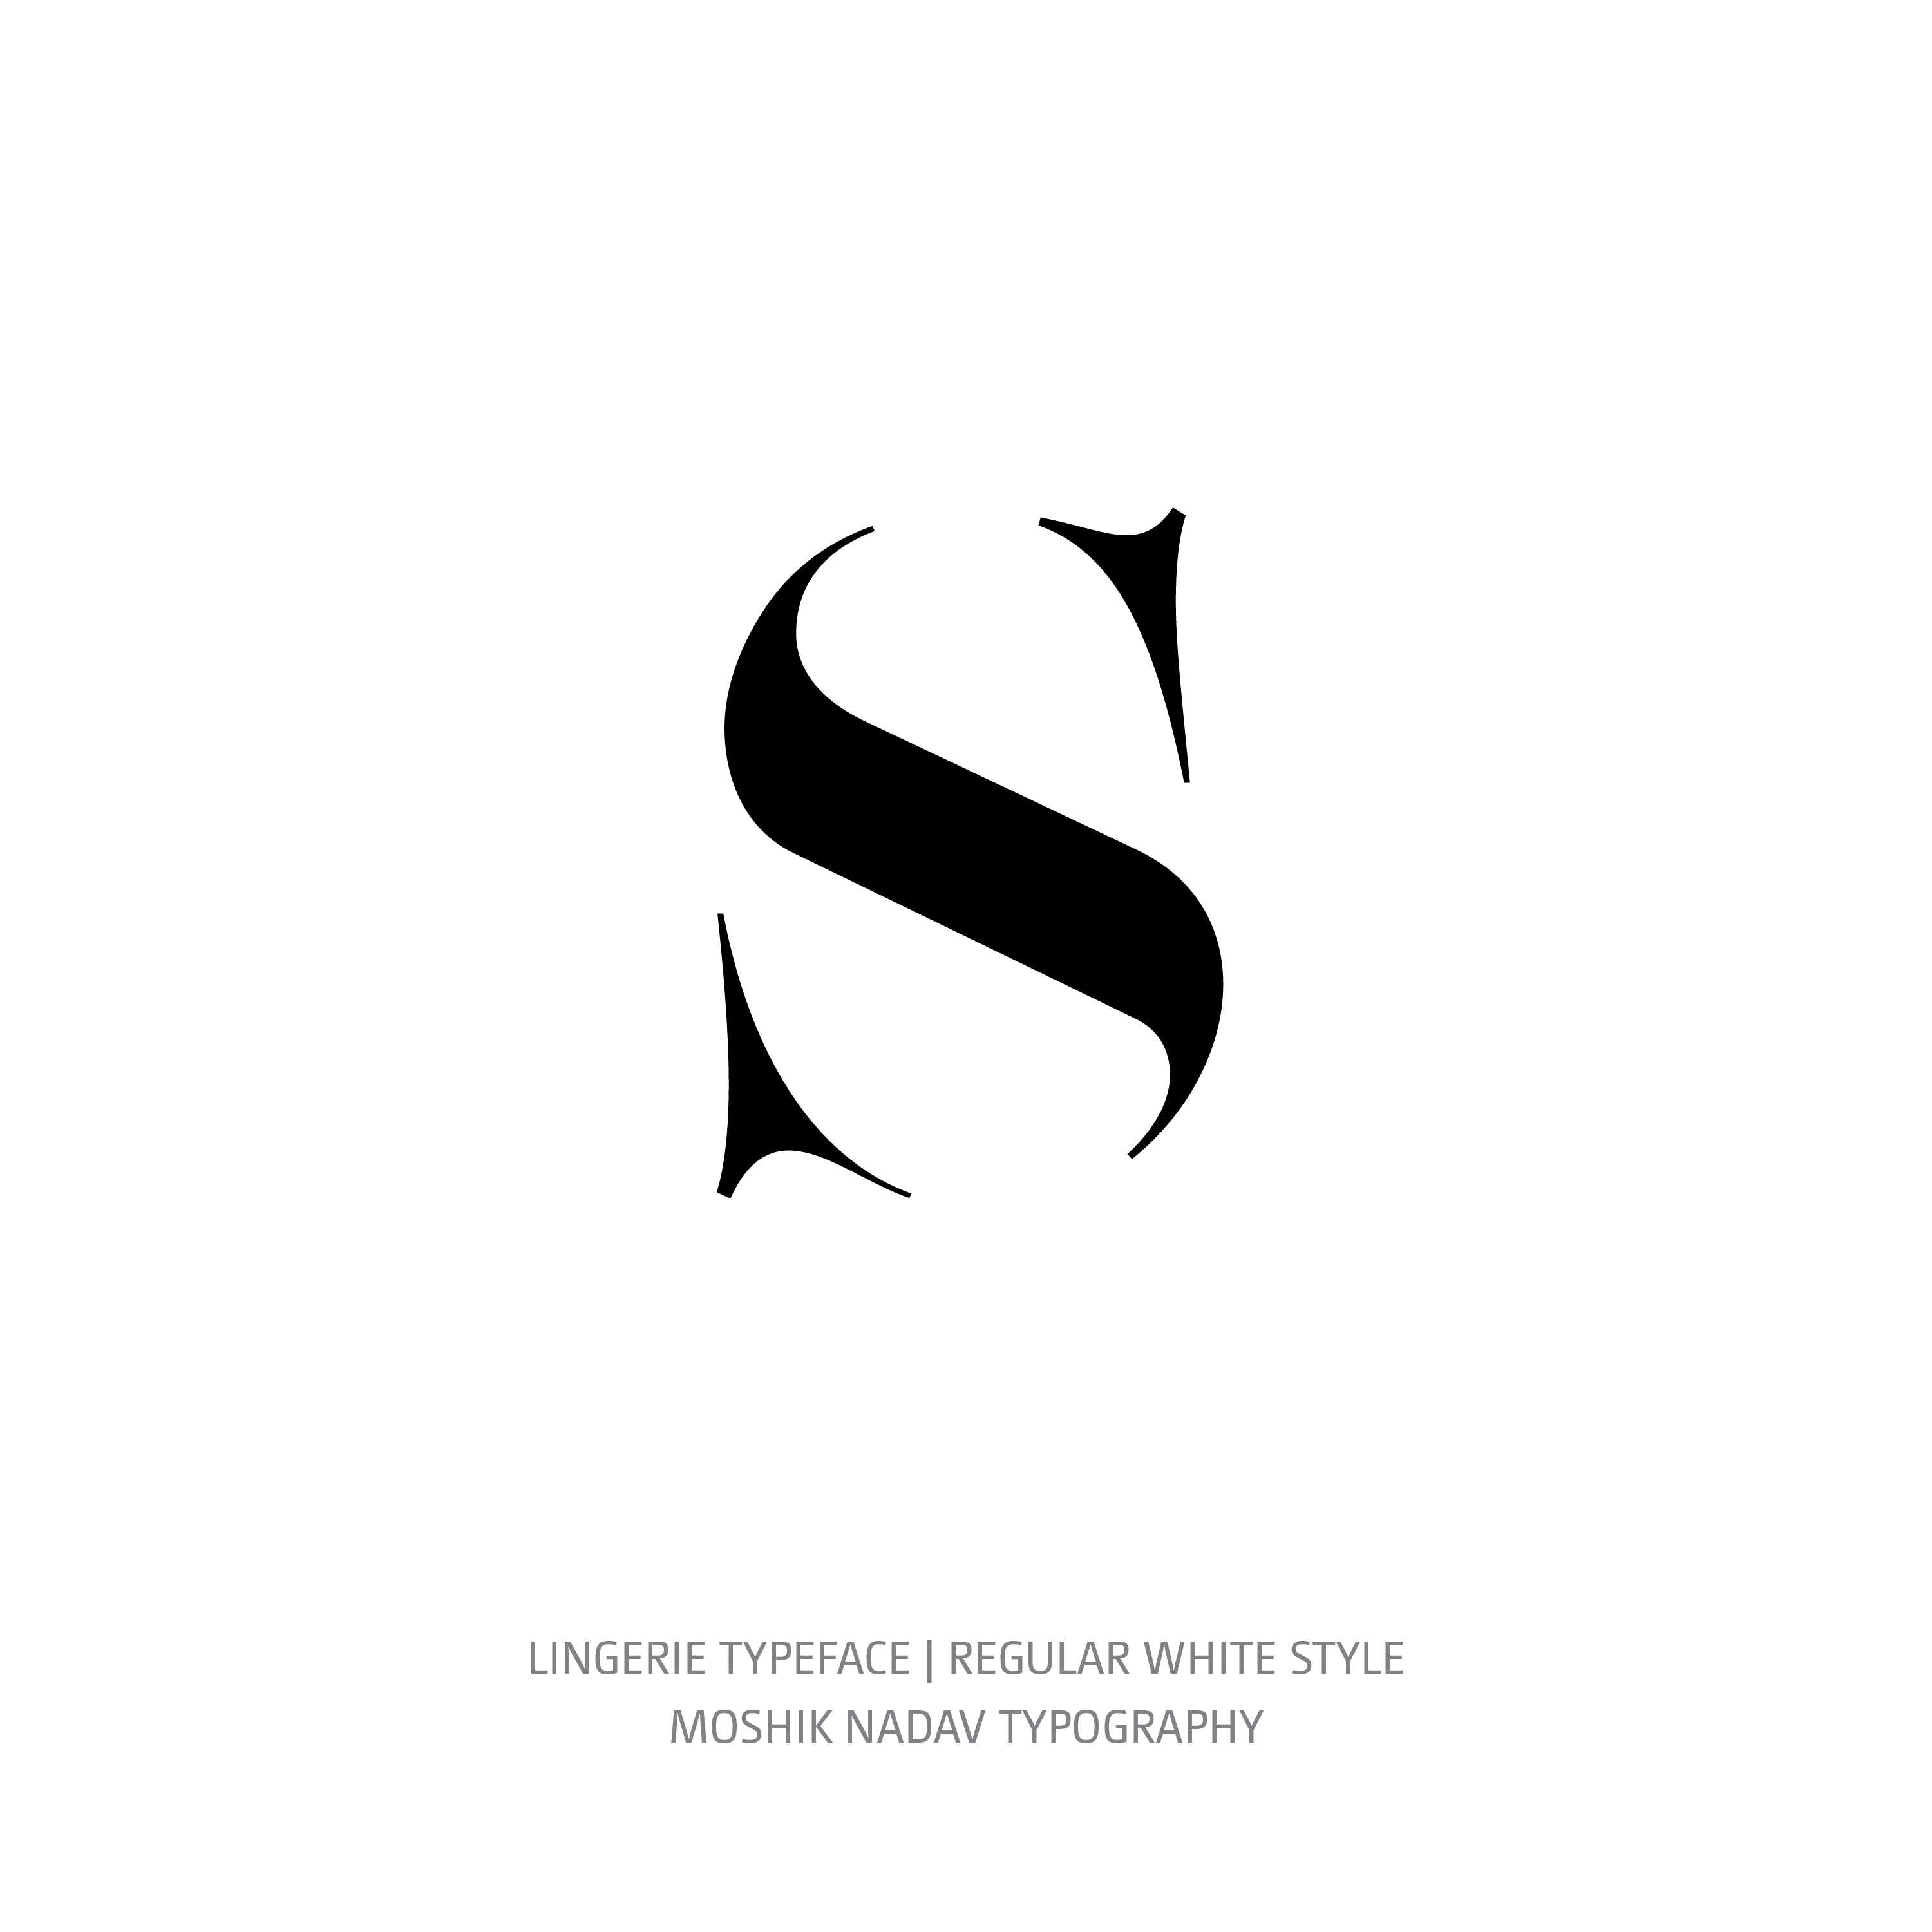 Lingerie Typeface Regular White s